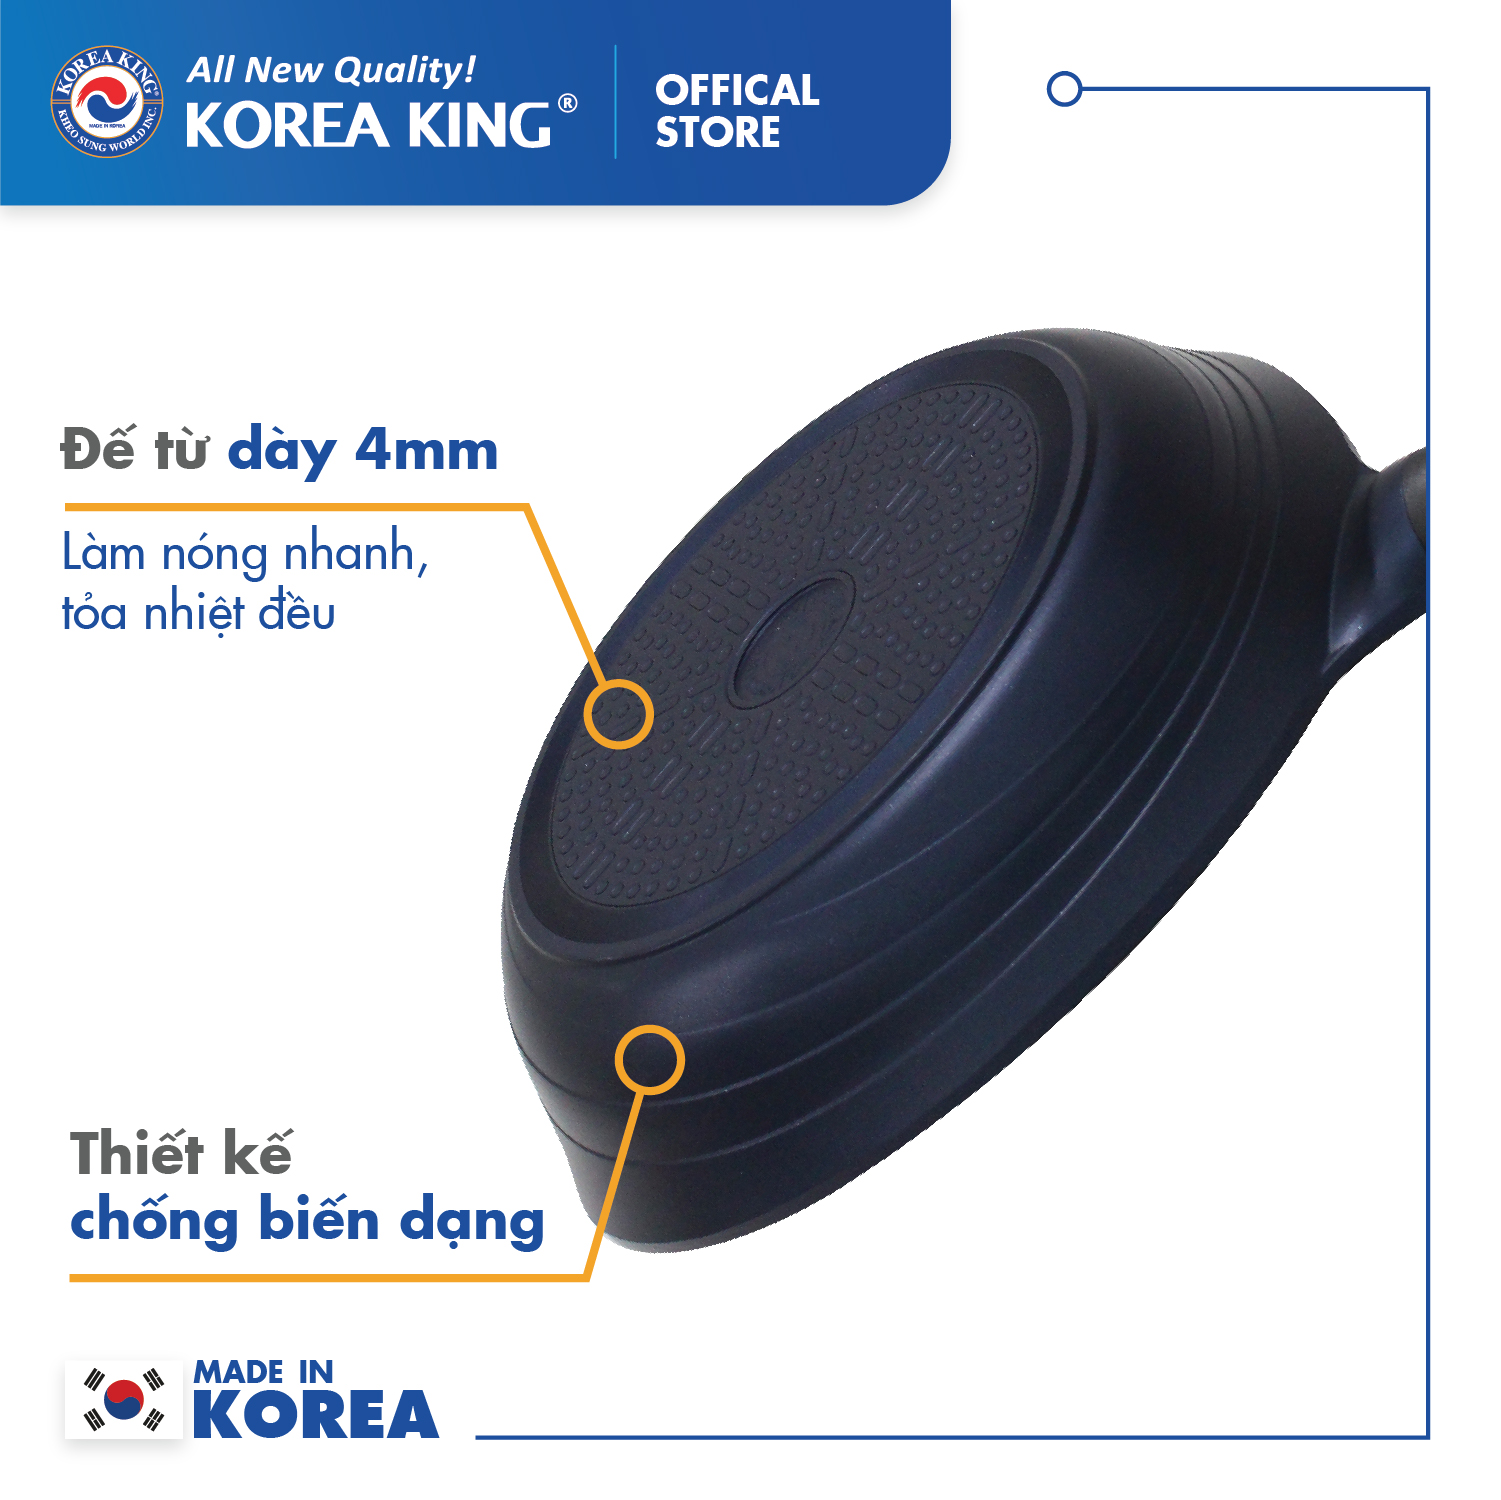 Combo 2 chảo sâu, cạn Colormic Korea King (1 chảo cạn 20cm và 1 chảo sâu 26cm)-Hàng chính hãng